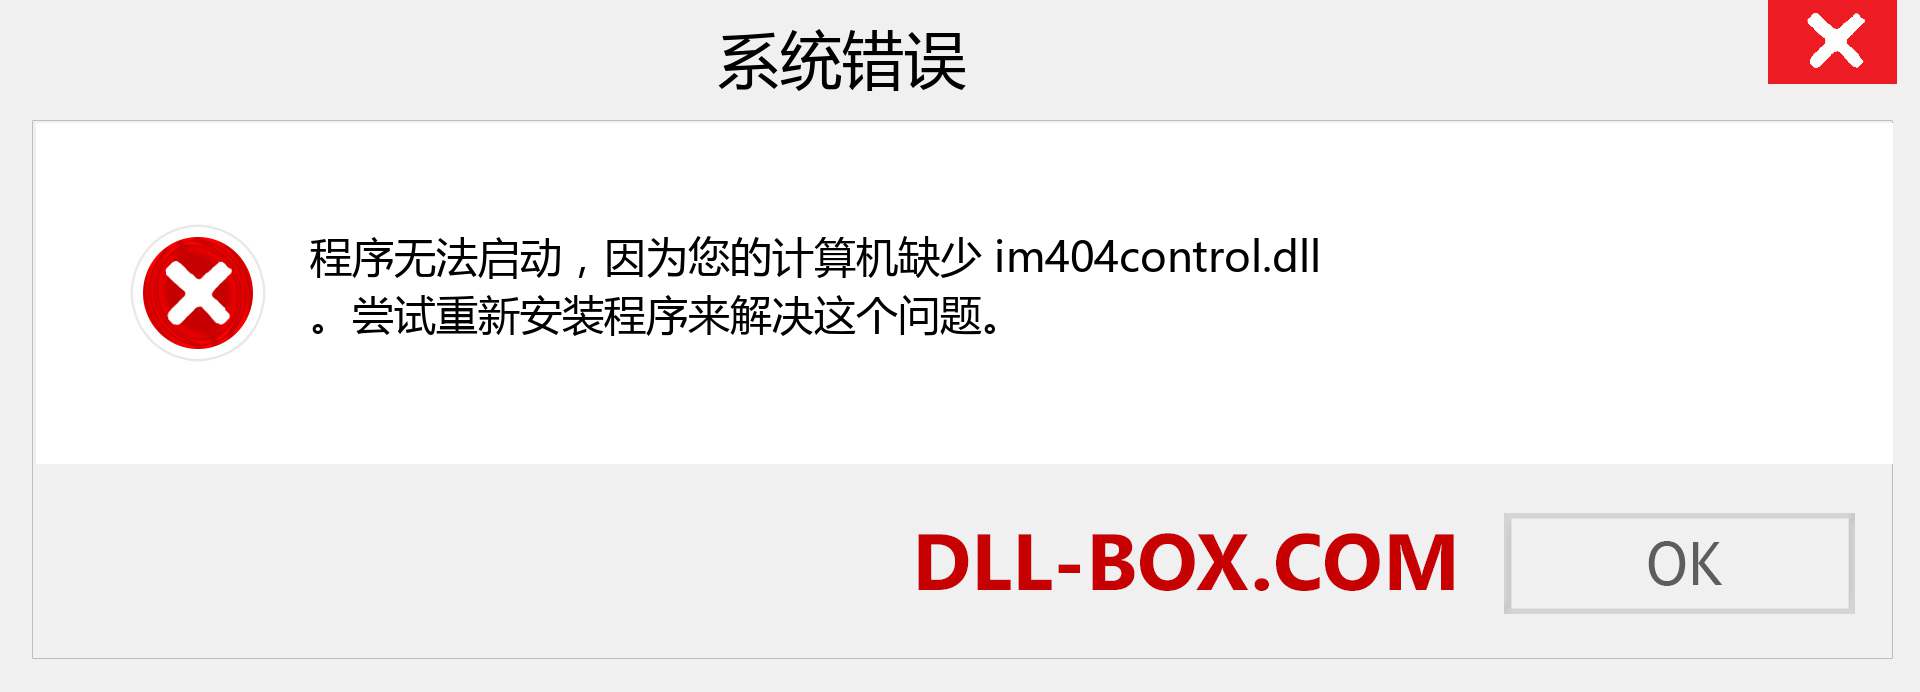 im404control.dll 文件丢失？。 适用于 Windows 7、8、10 的下载 - 修复 Windows、照片、图像上的 im404control dll 丢失错误